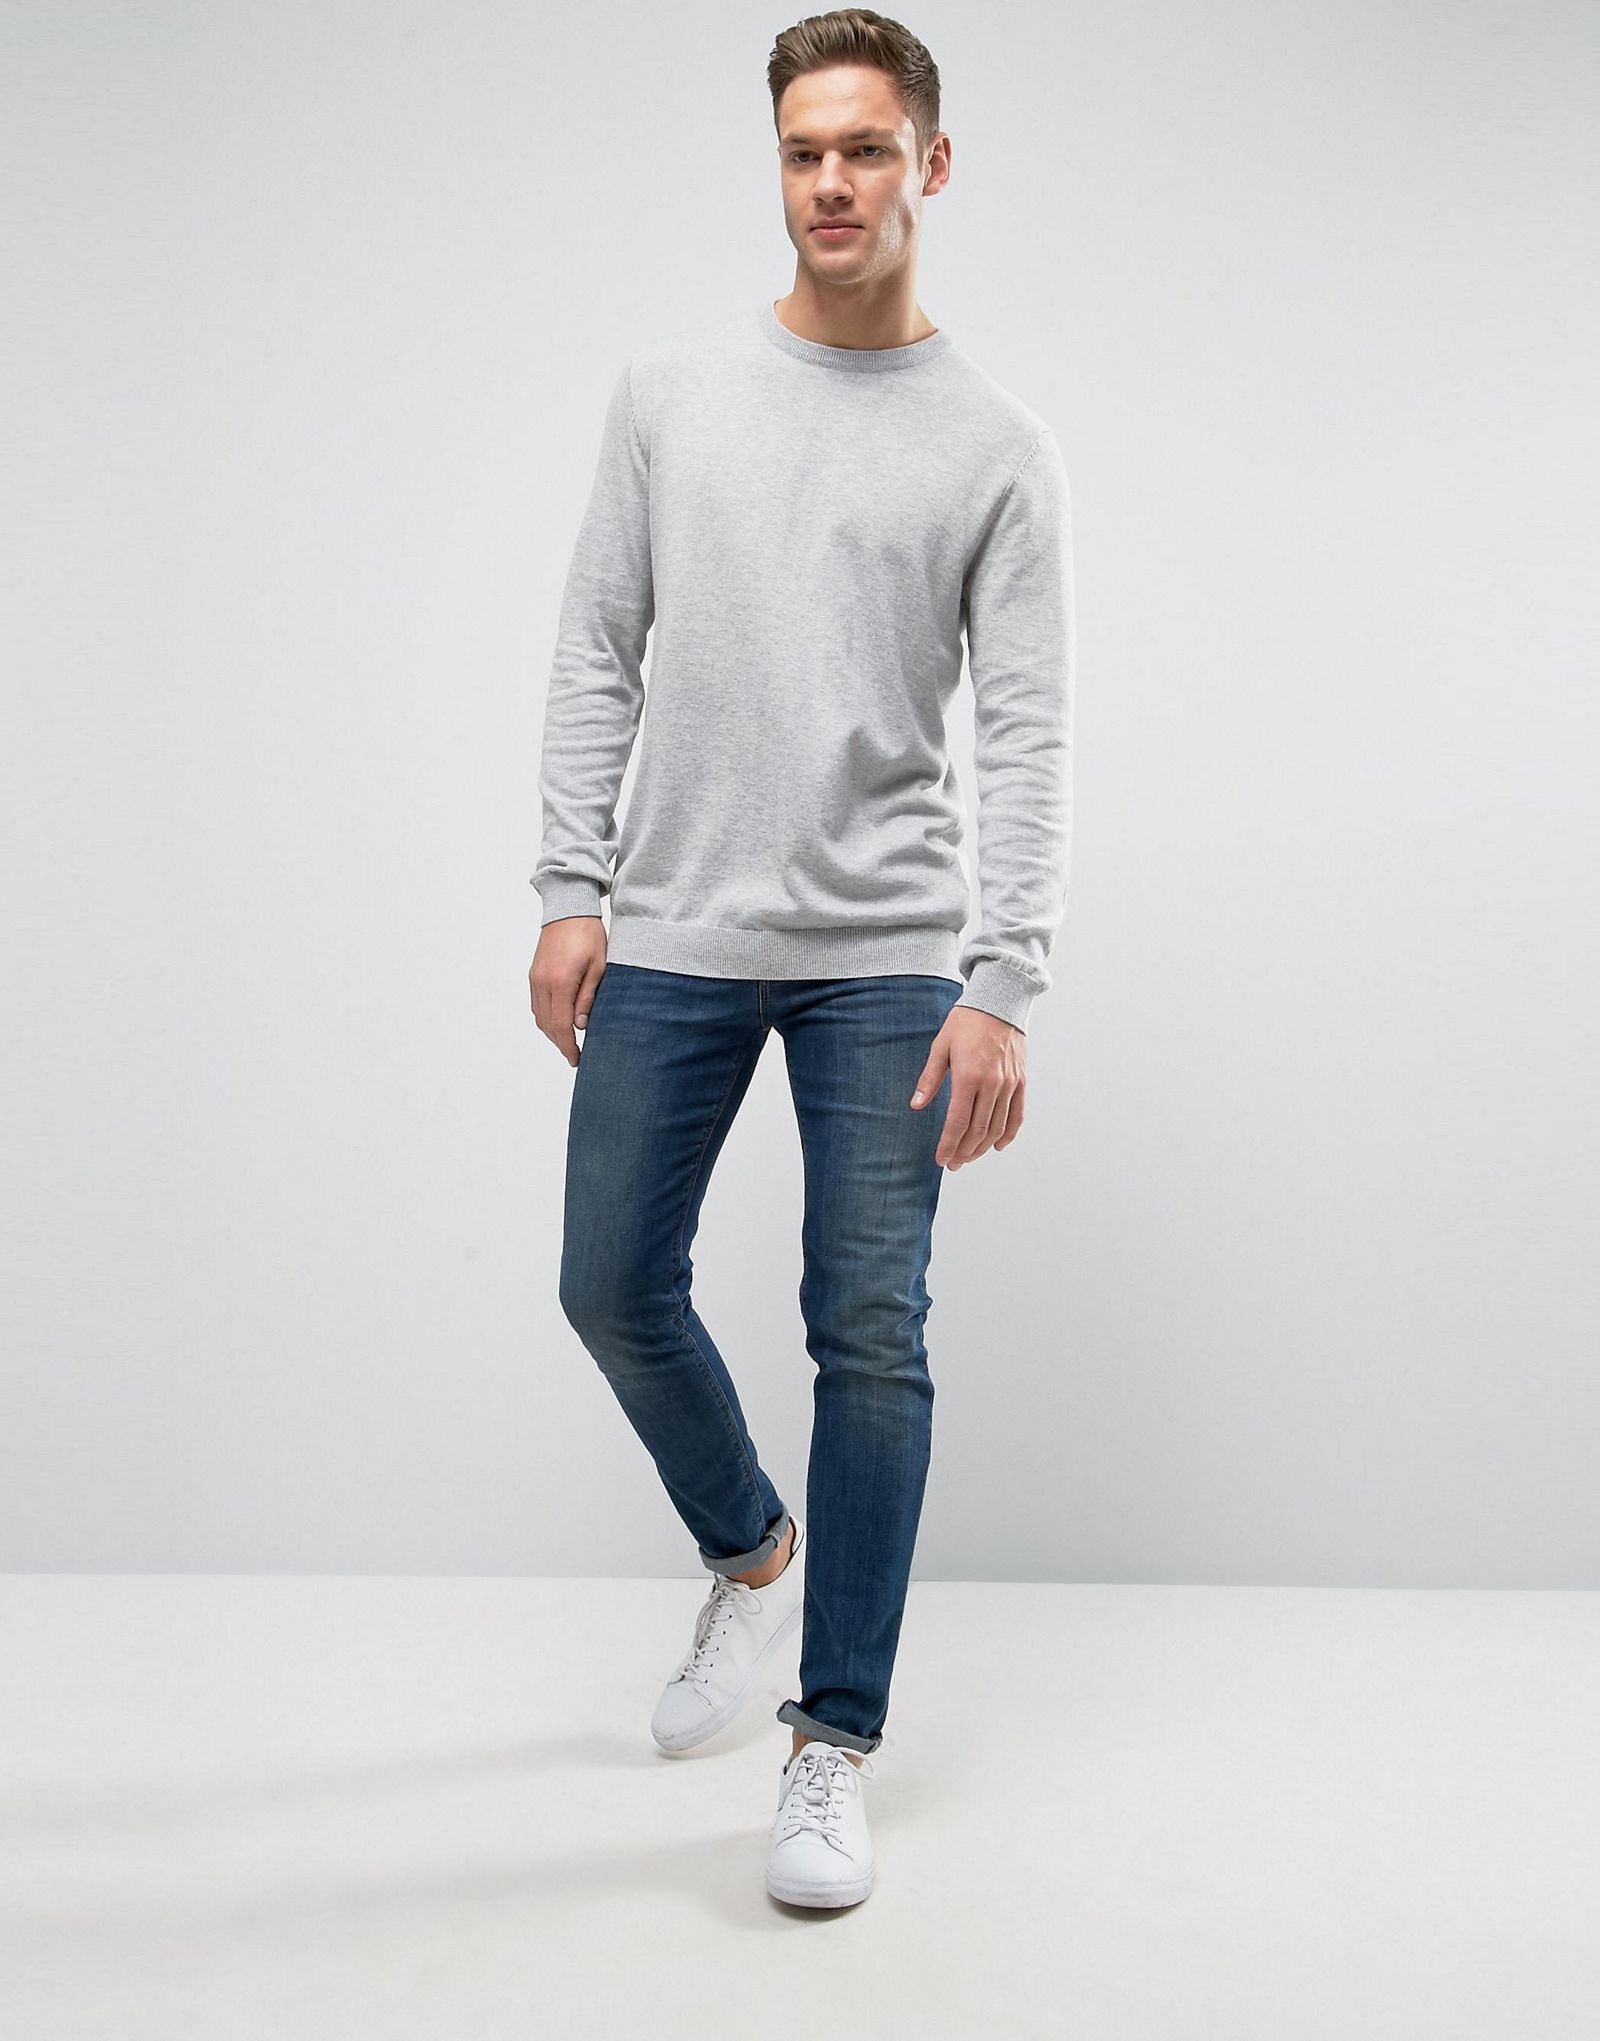 Esprit Sweatshirt with Marl Detail